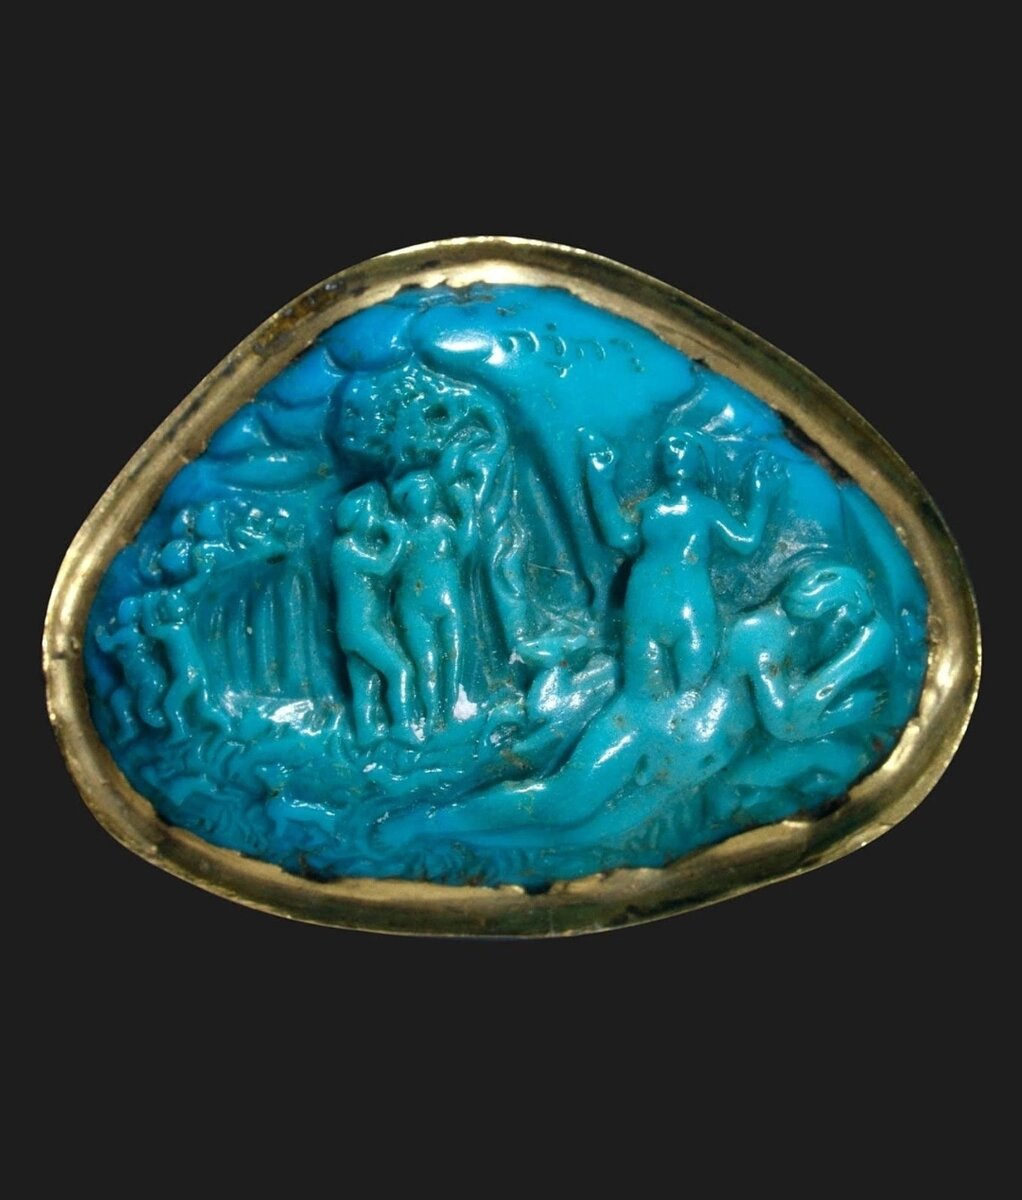 Камея из резной бирюзы. История Адама и Евы. Италия, первая половина XV века